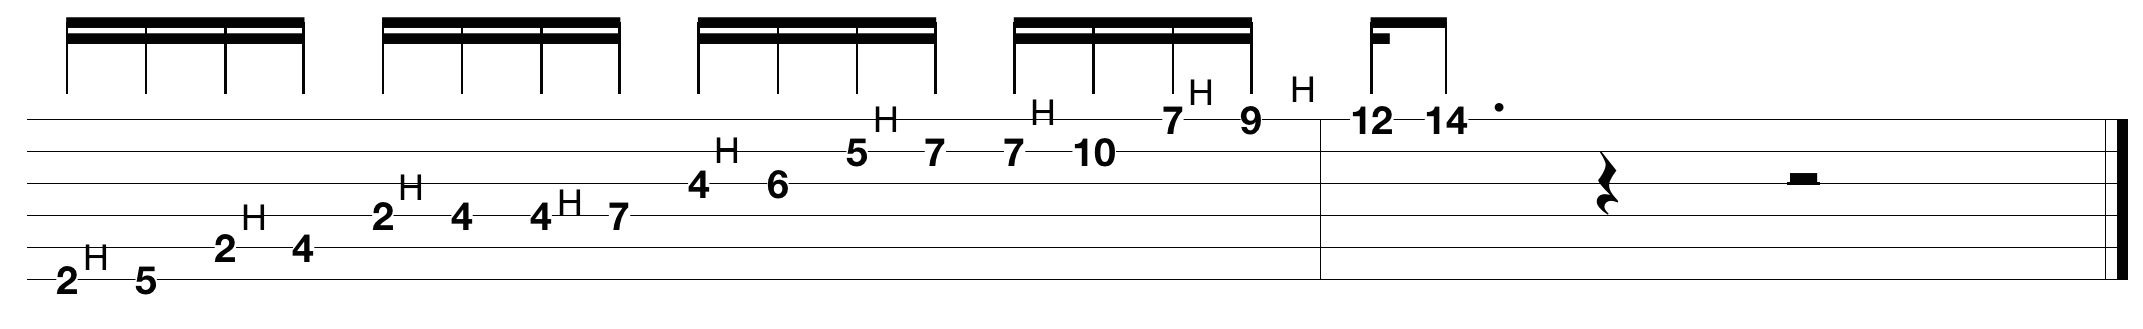 justin-guitar-scales_3.png